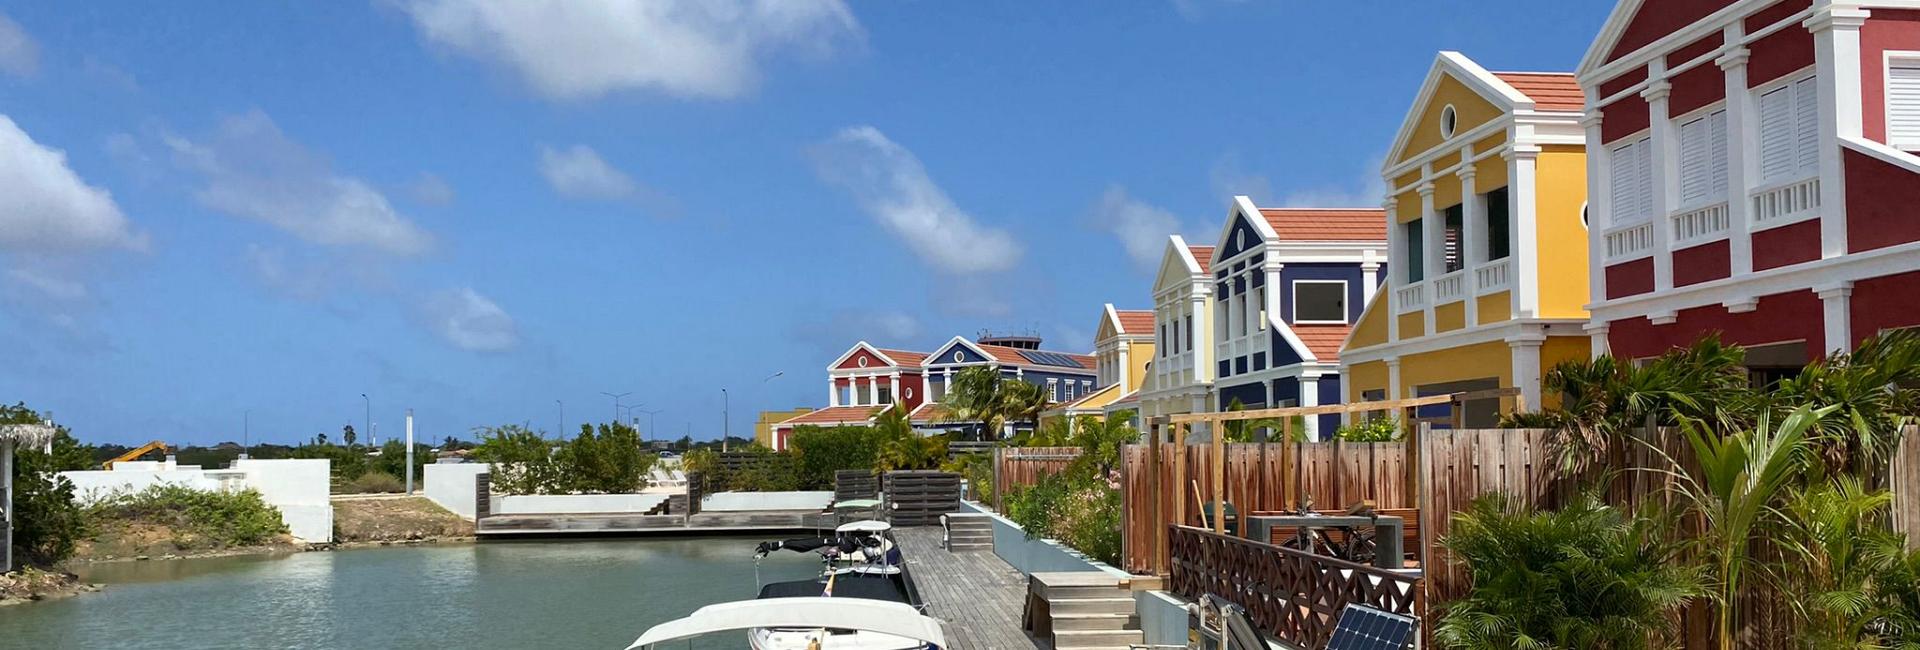 Vakantiehuis Bonaire